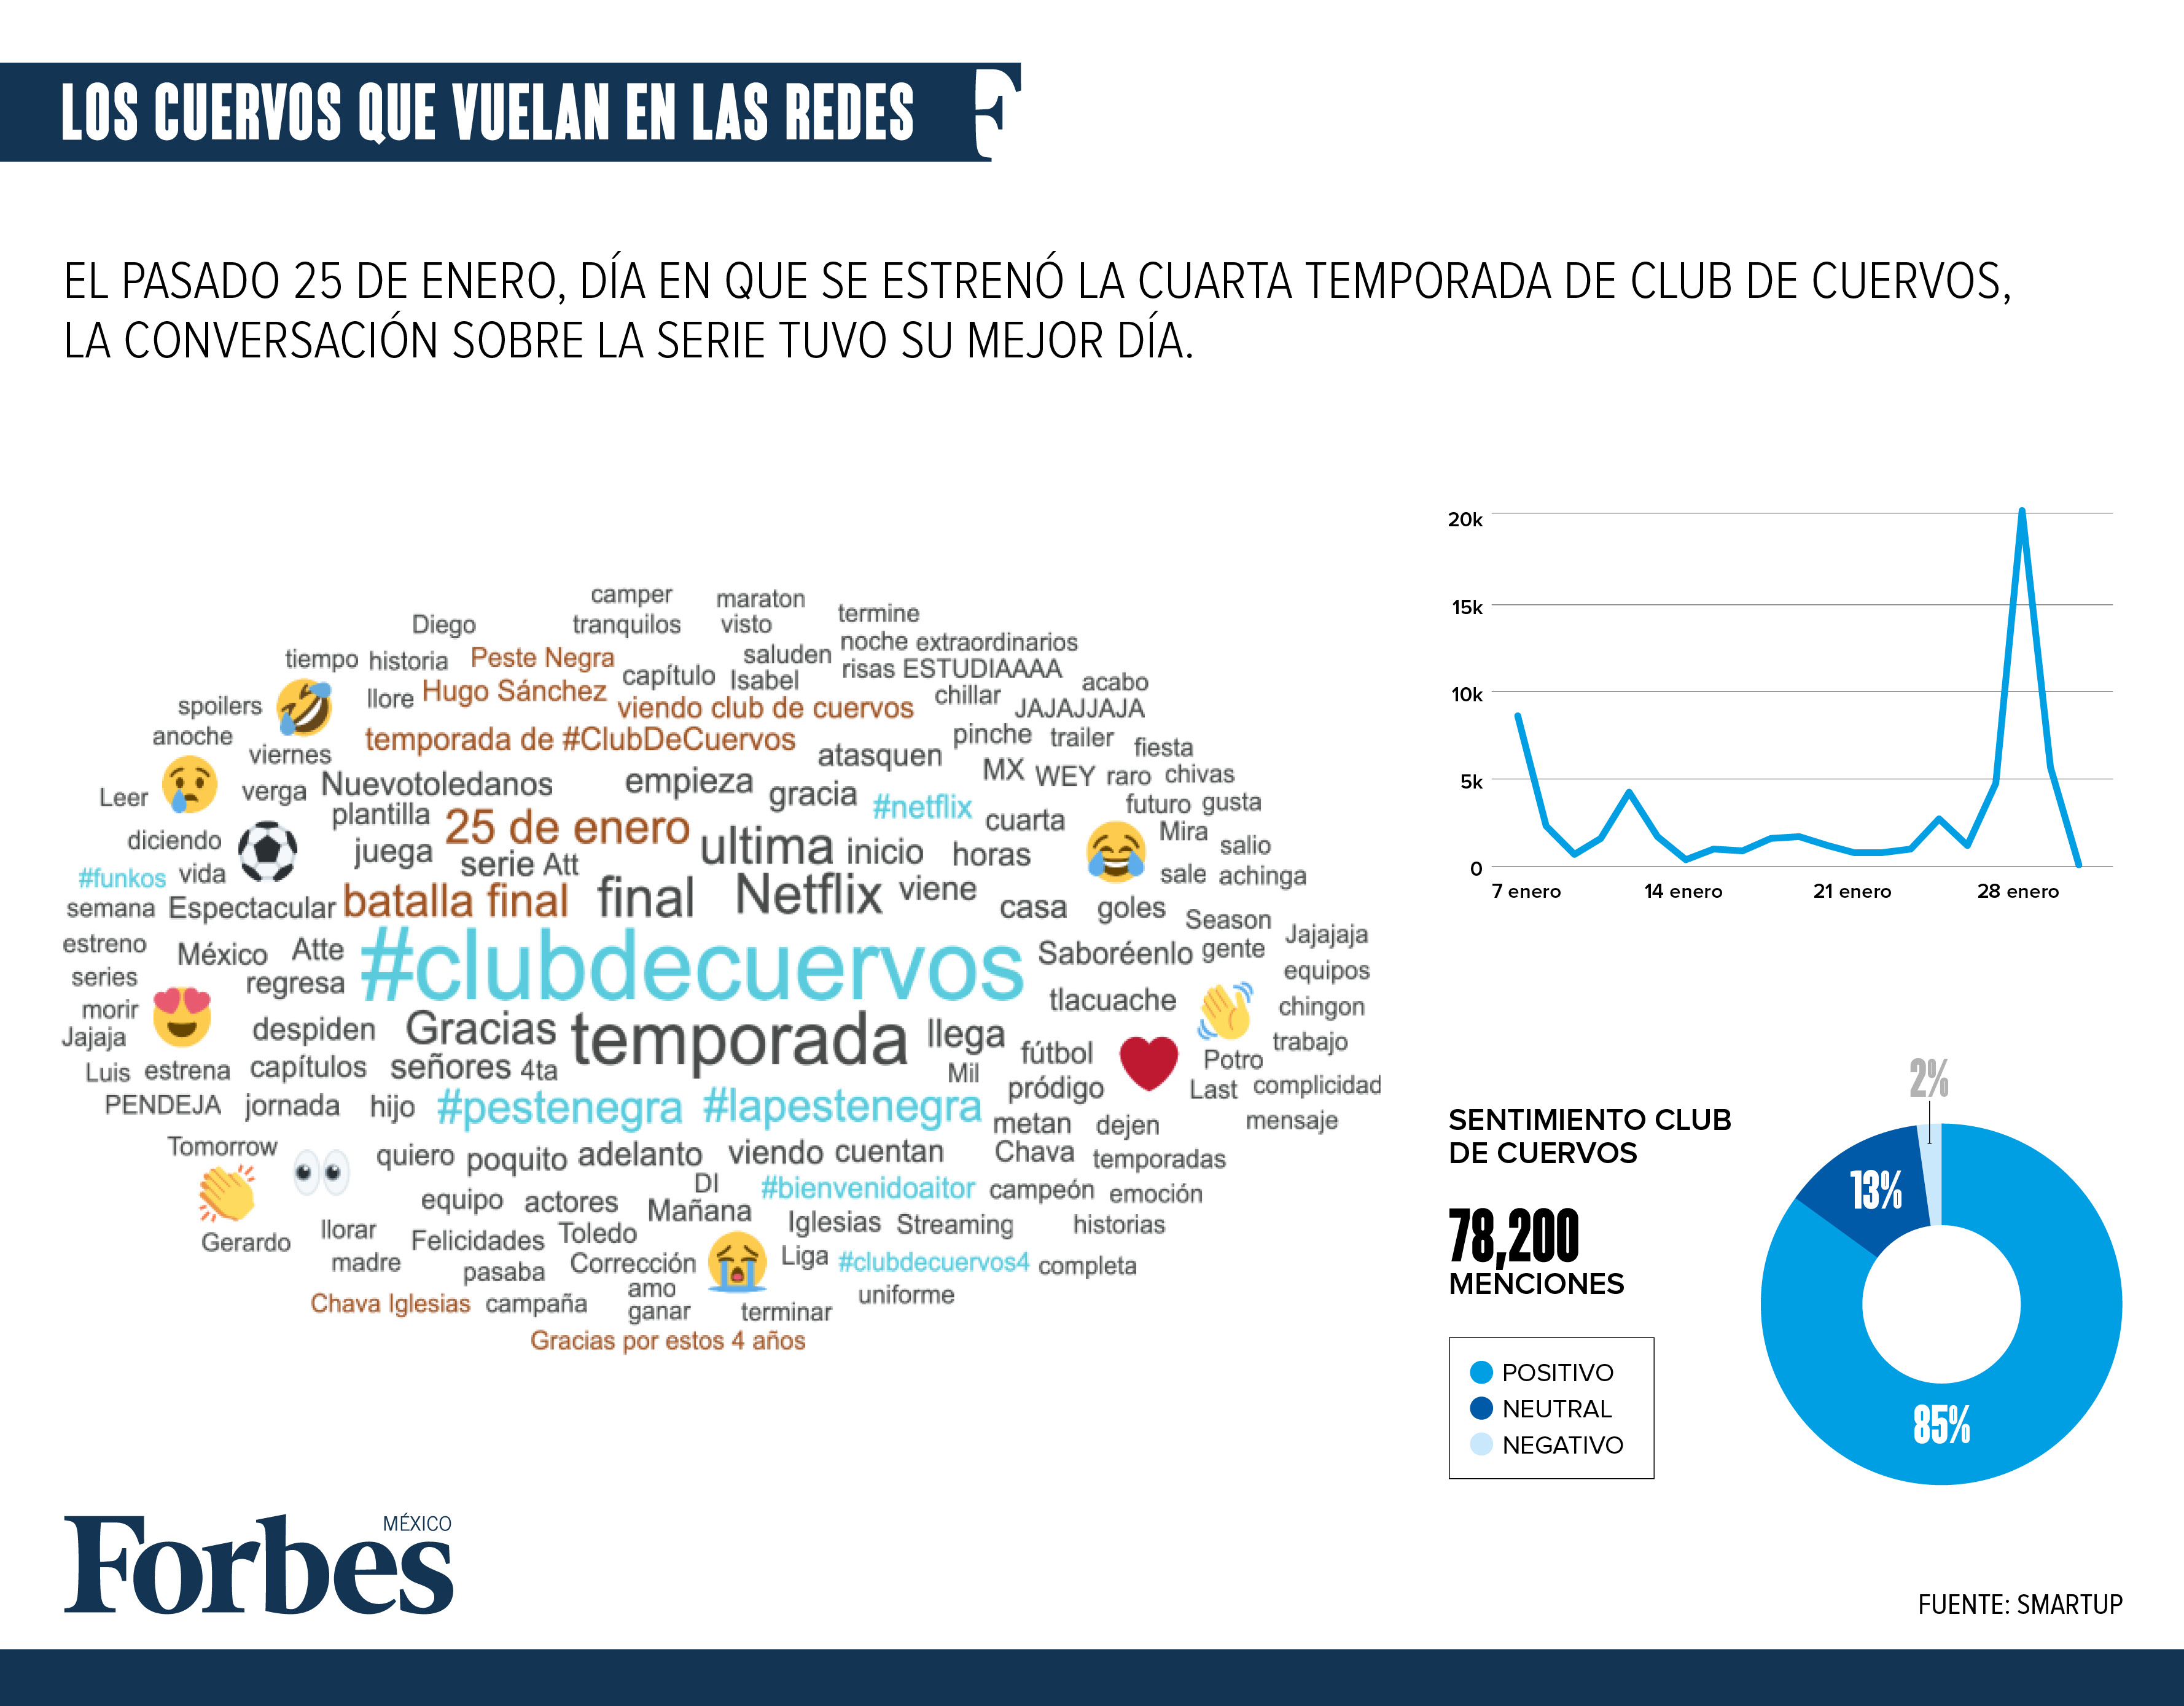 Club de Cuervos se apodera de las redes sociales en su cuarta temporada •  Actualidad • Forbes México